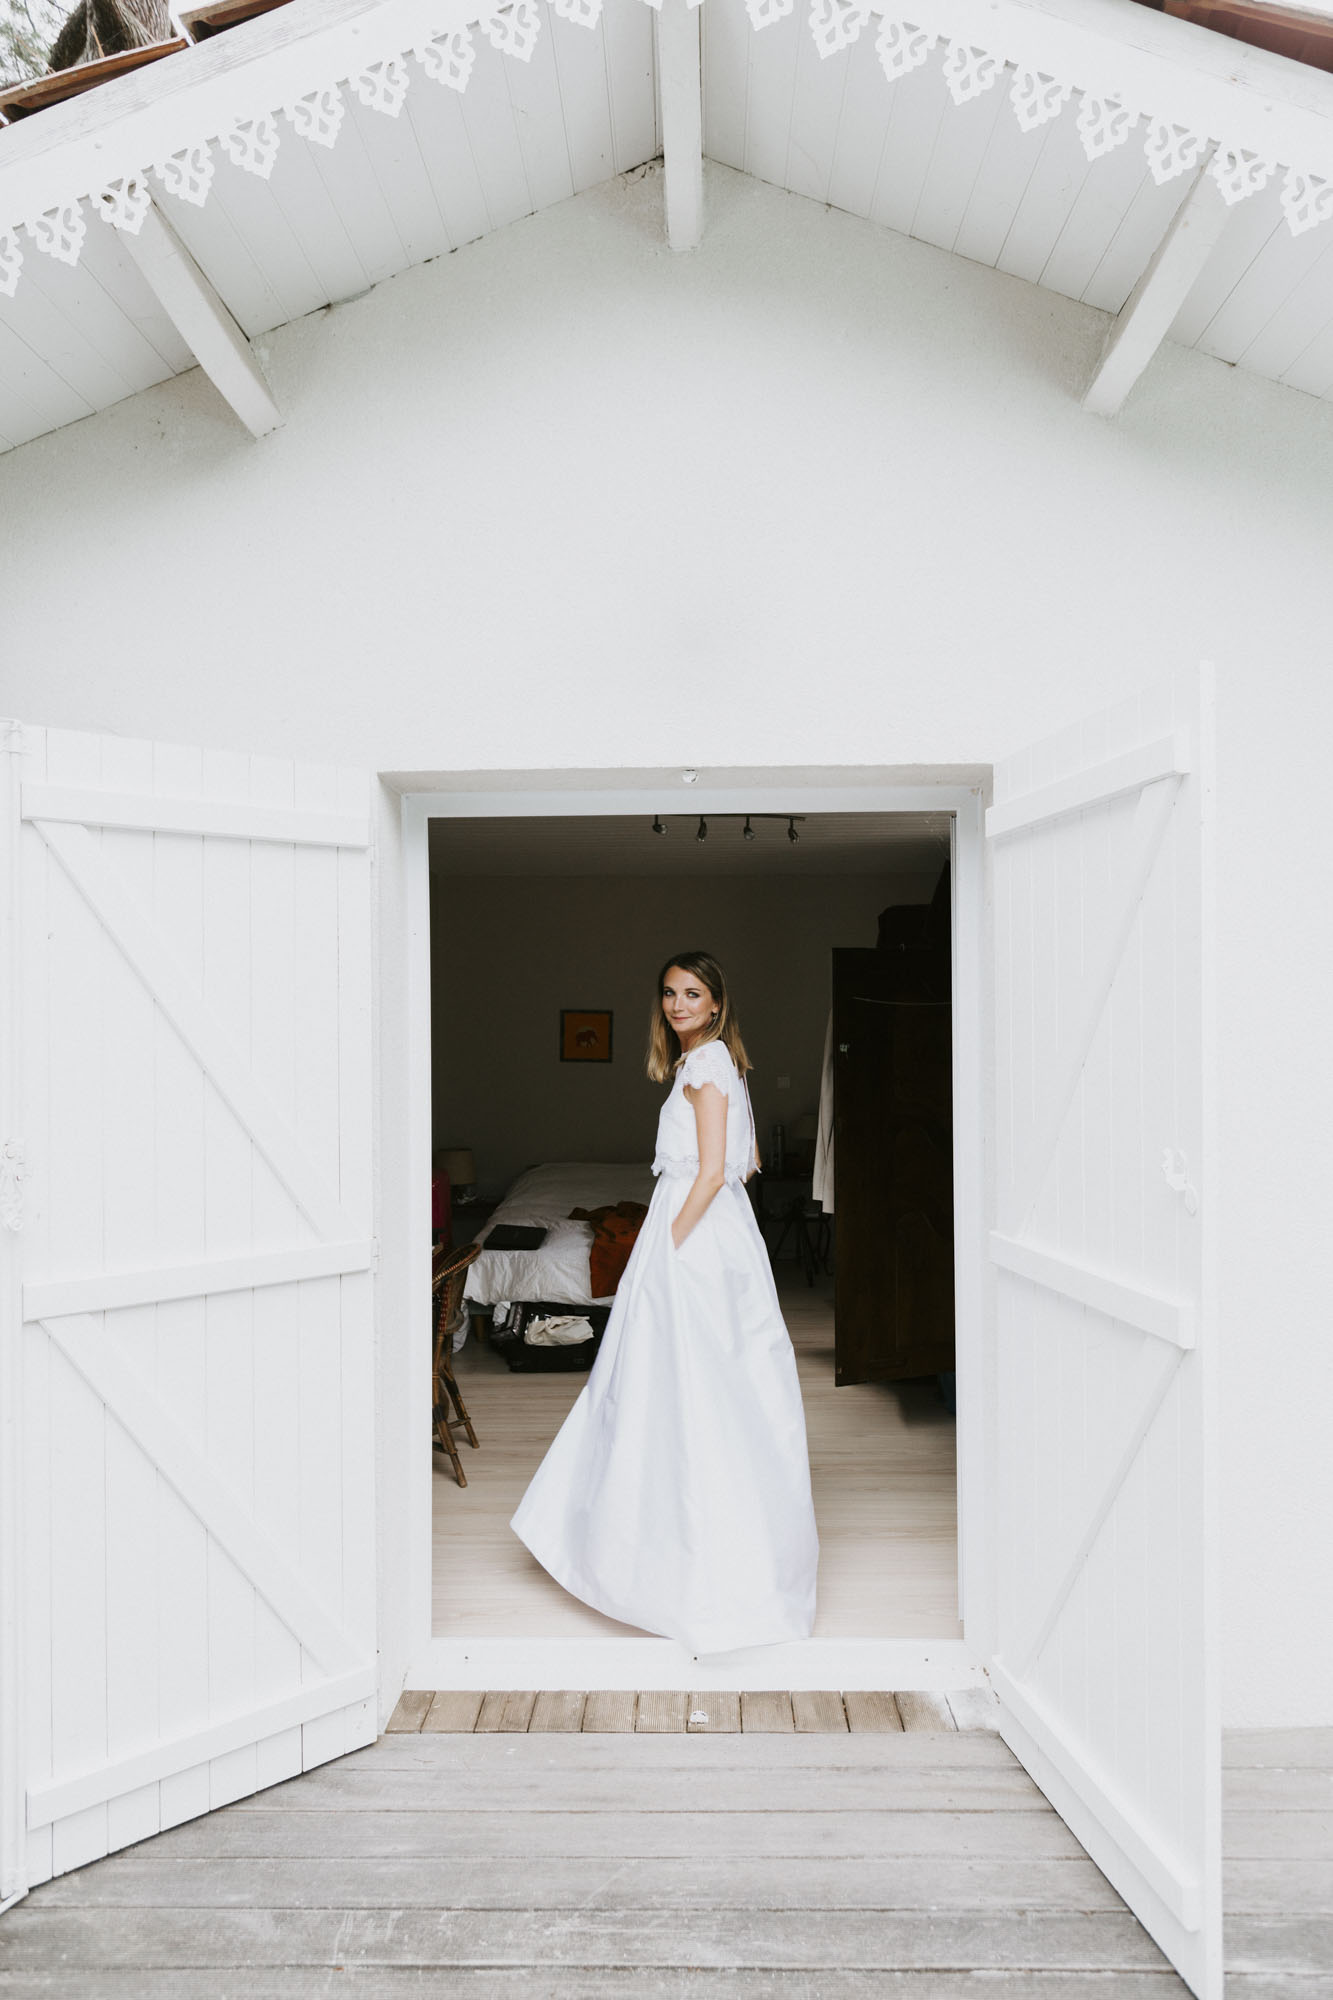 Mariage à Arcachon: la mariée fait tourner sa robe dans l'entrée du petit chalet de la maison familiale arcachonnaise où elle s'est préparée